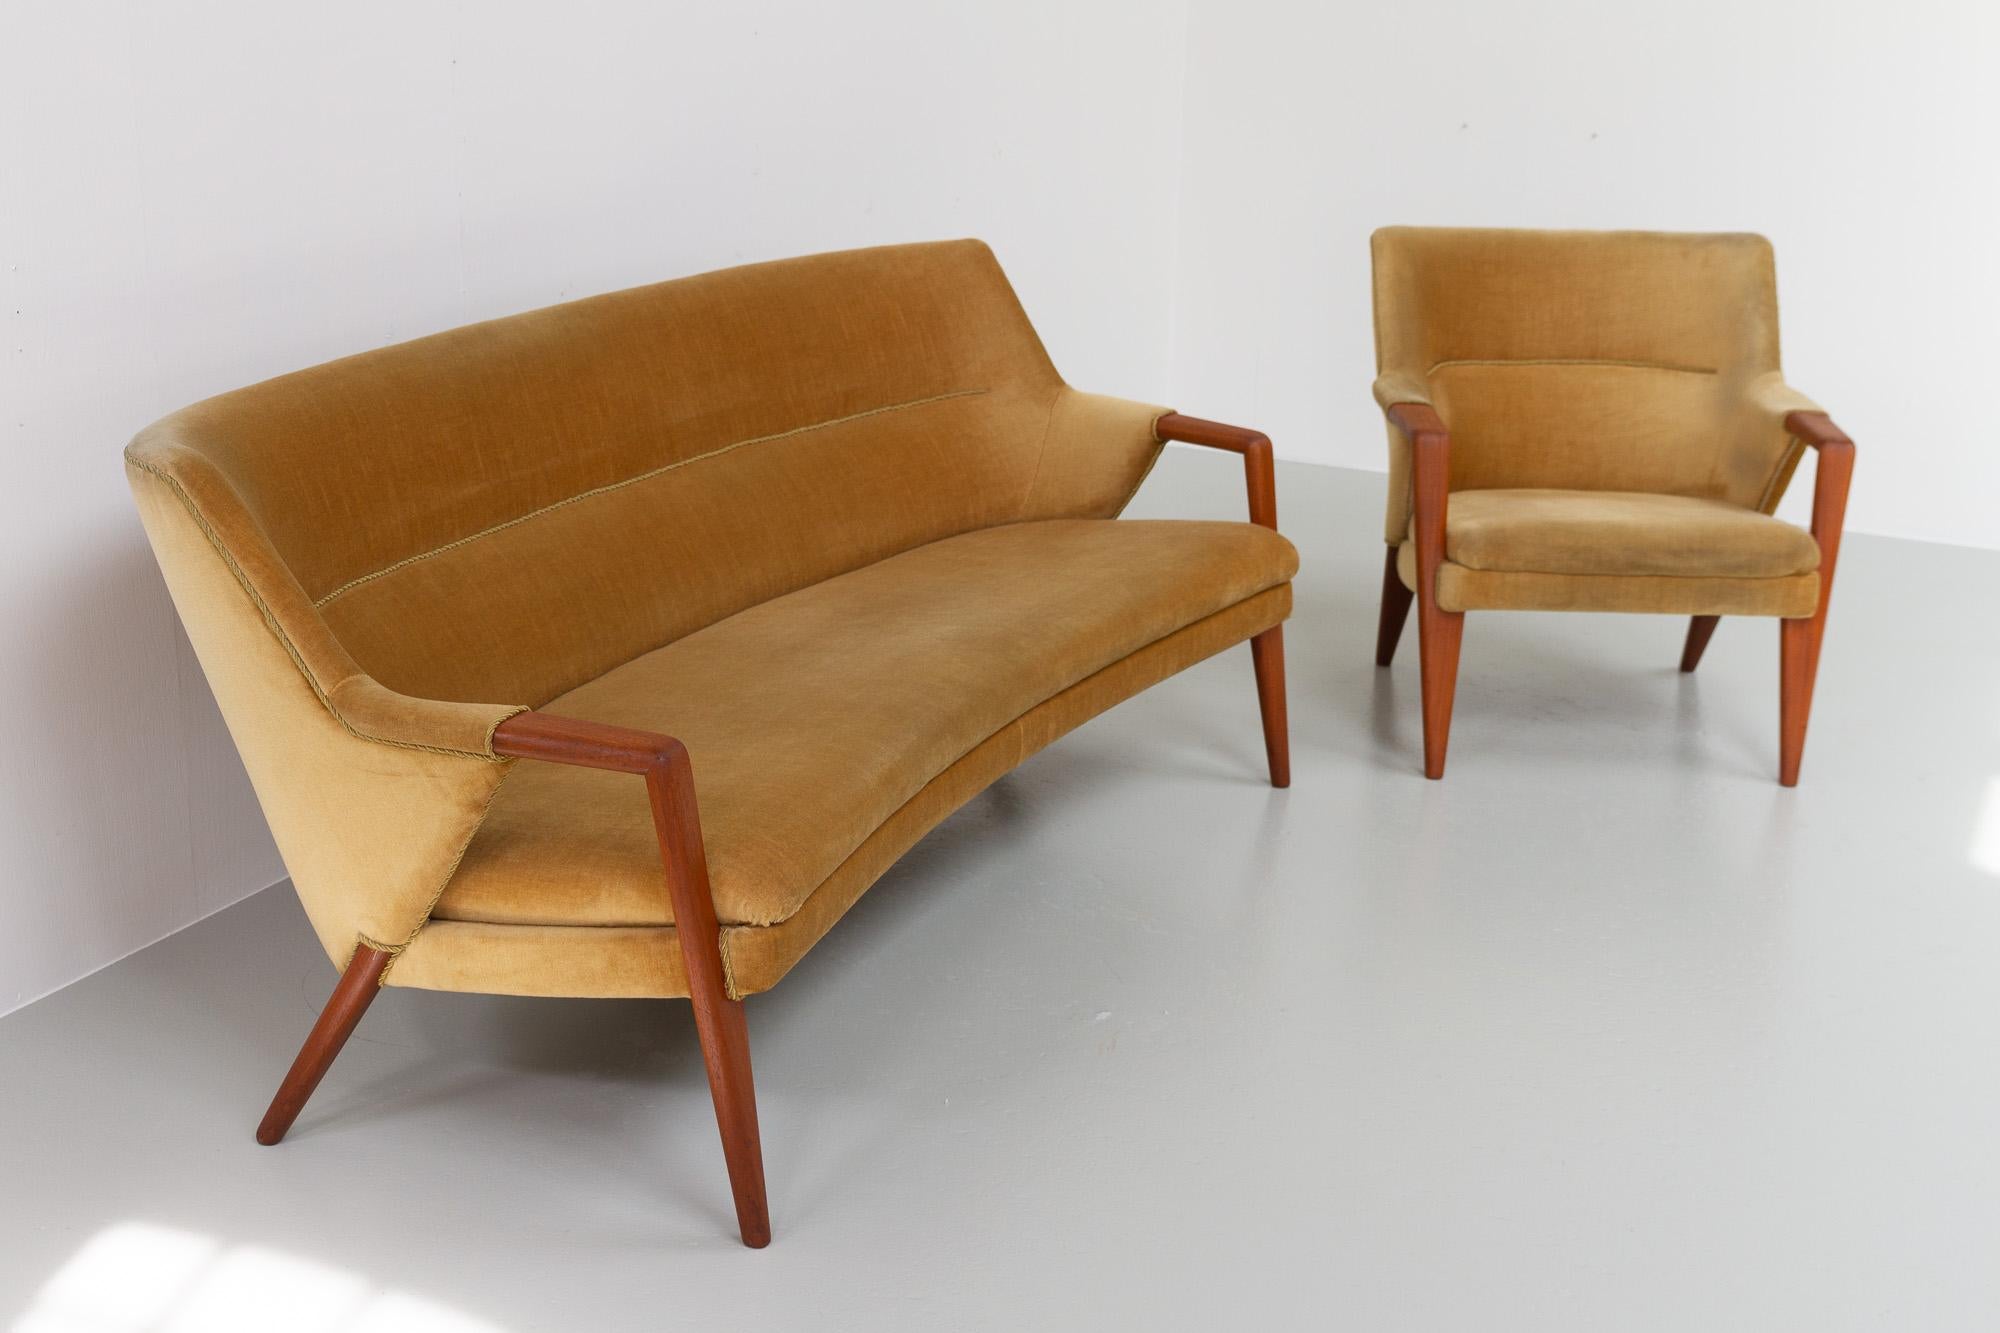 Scandinavian Modern Danish Modern Banana Sofa and Chair by Kurt Olsen for Slagelse Møbelværk, 1950s For Sale